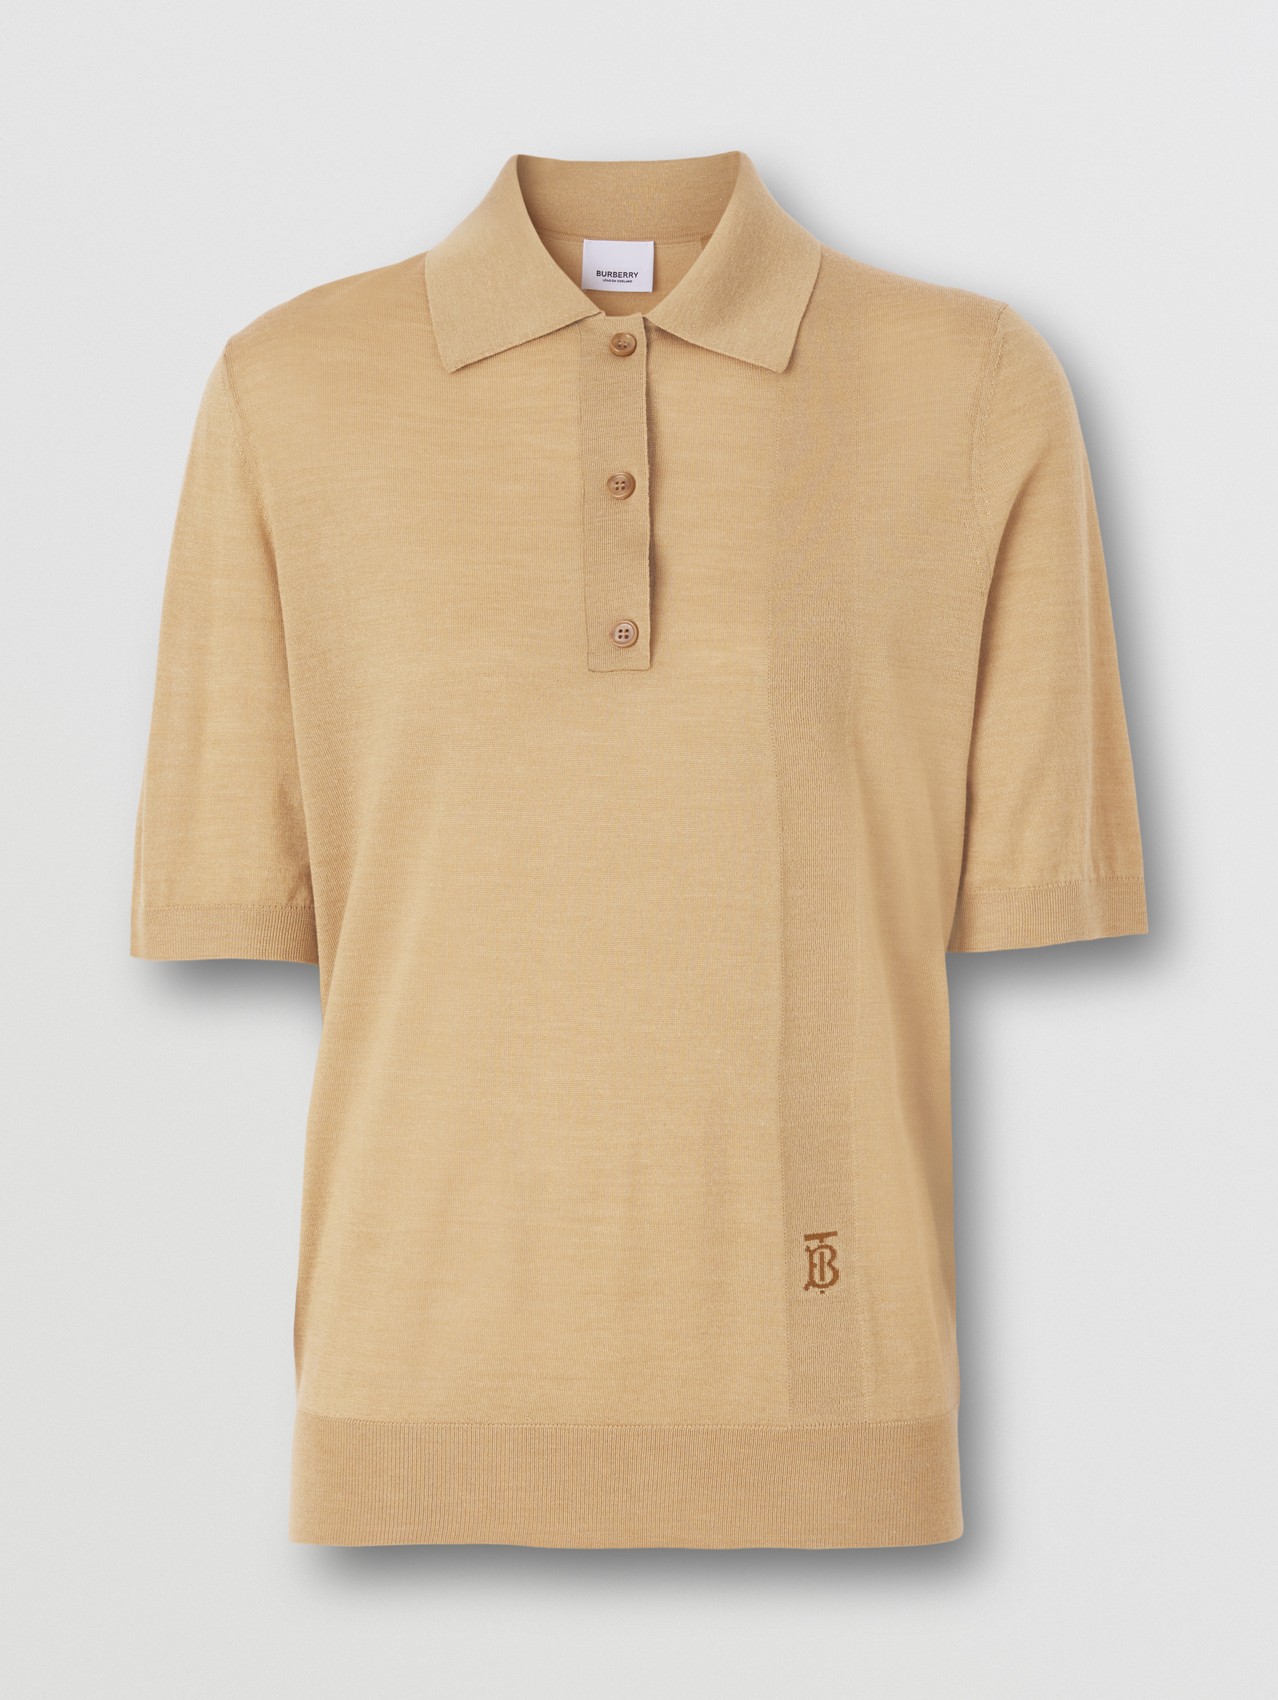 Poloshirt aus Wolle, Seide und Kaschmir mit Monogrammmotiv (Camelfarben)